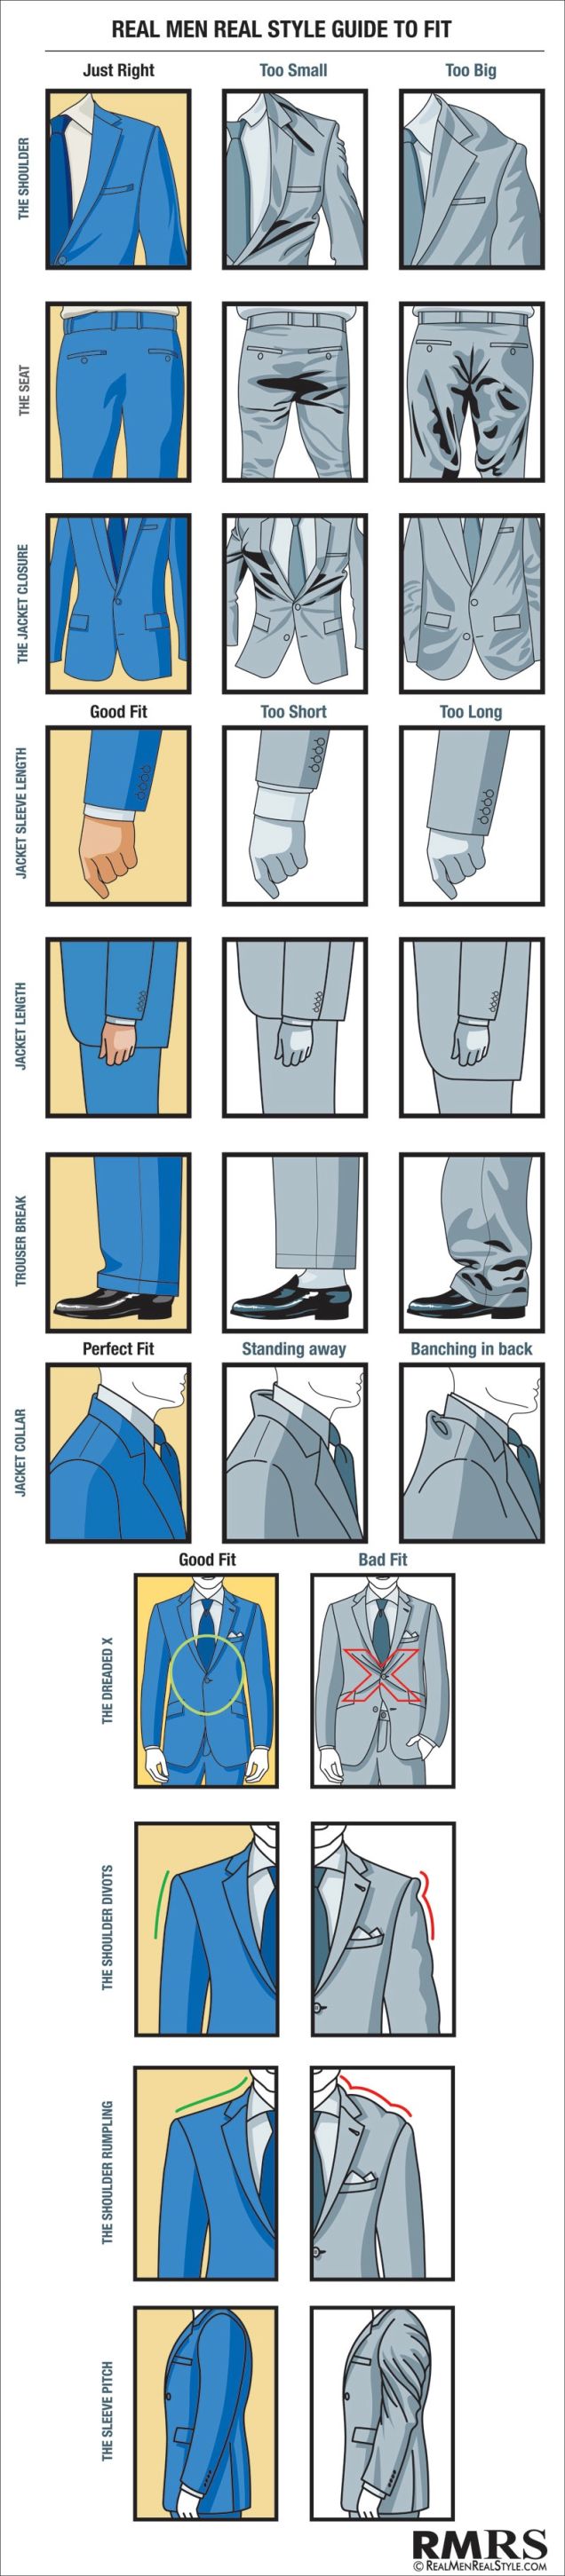 Suit Guide